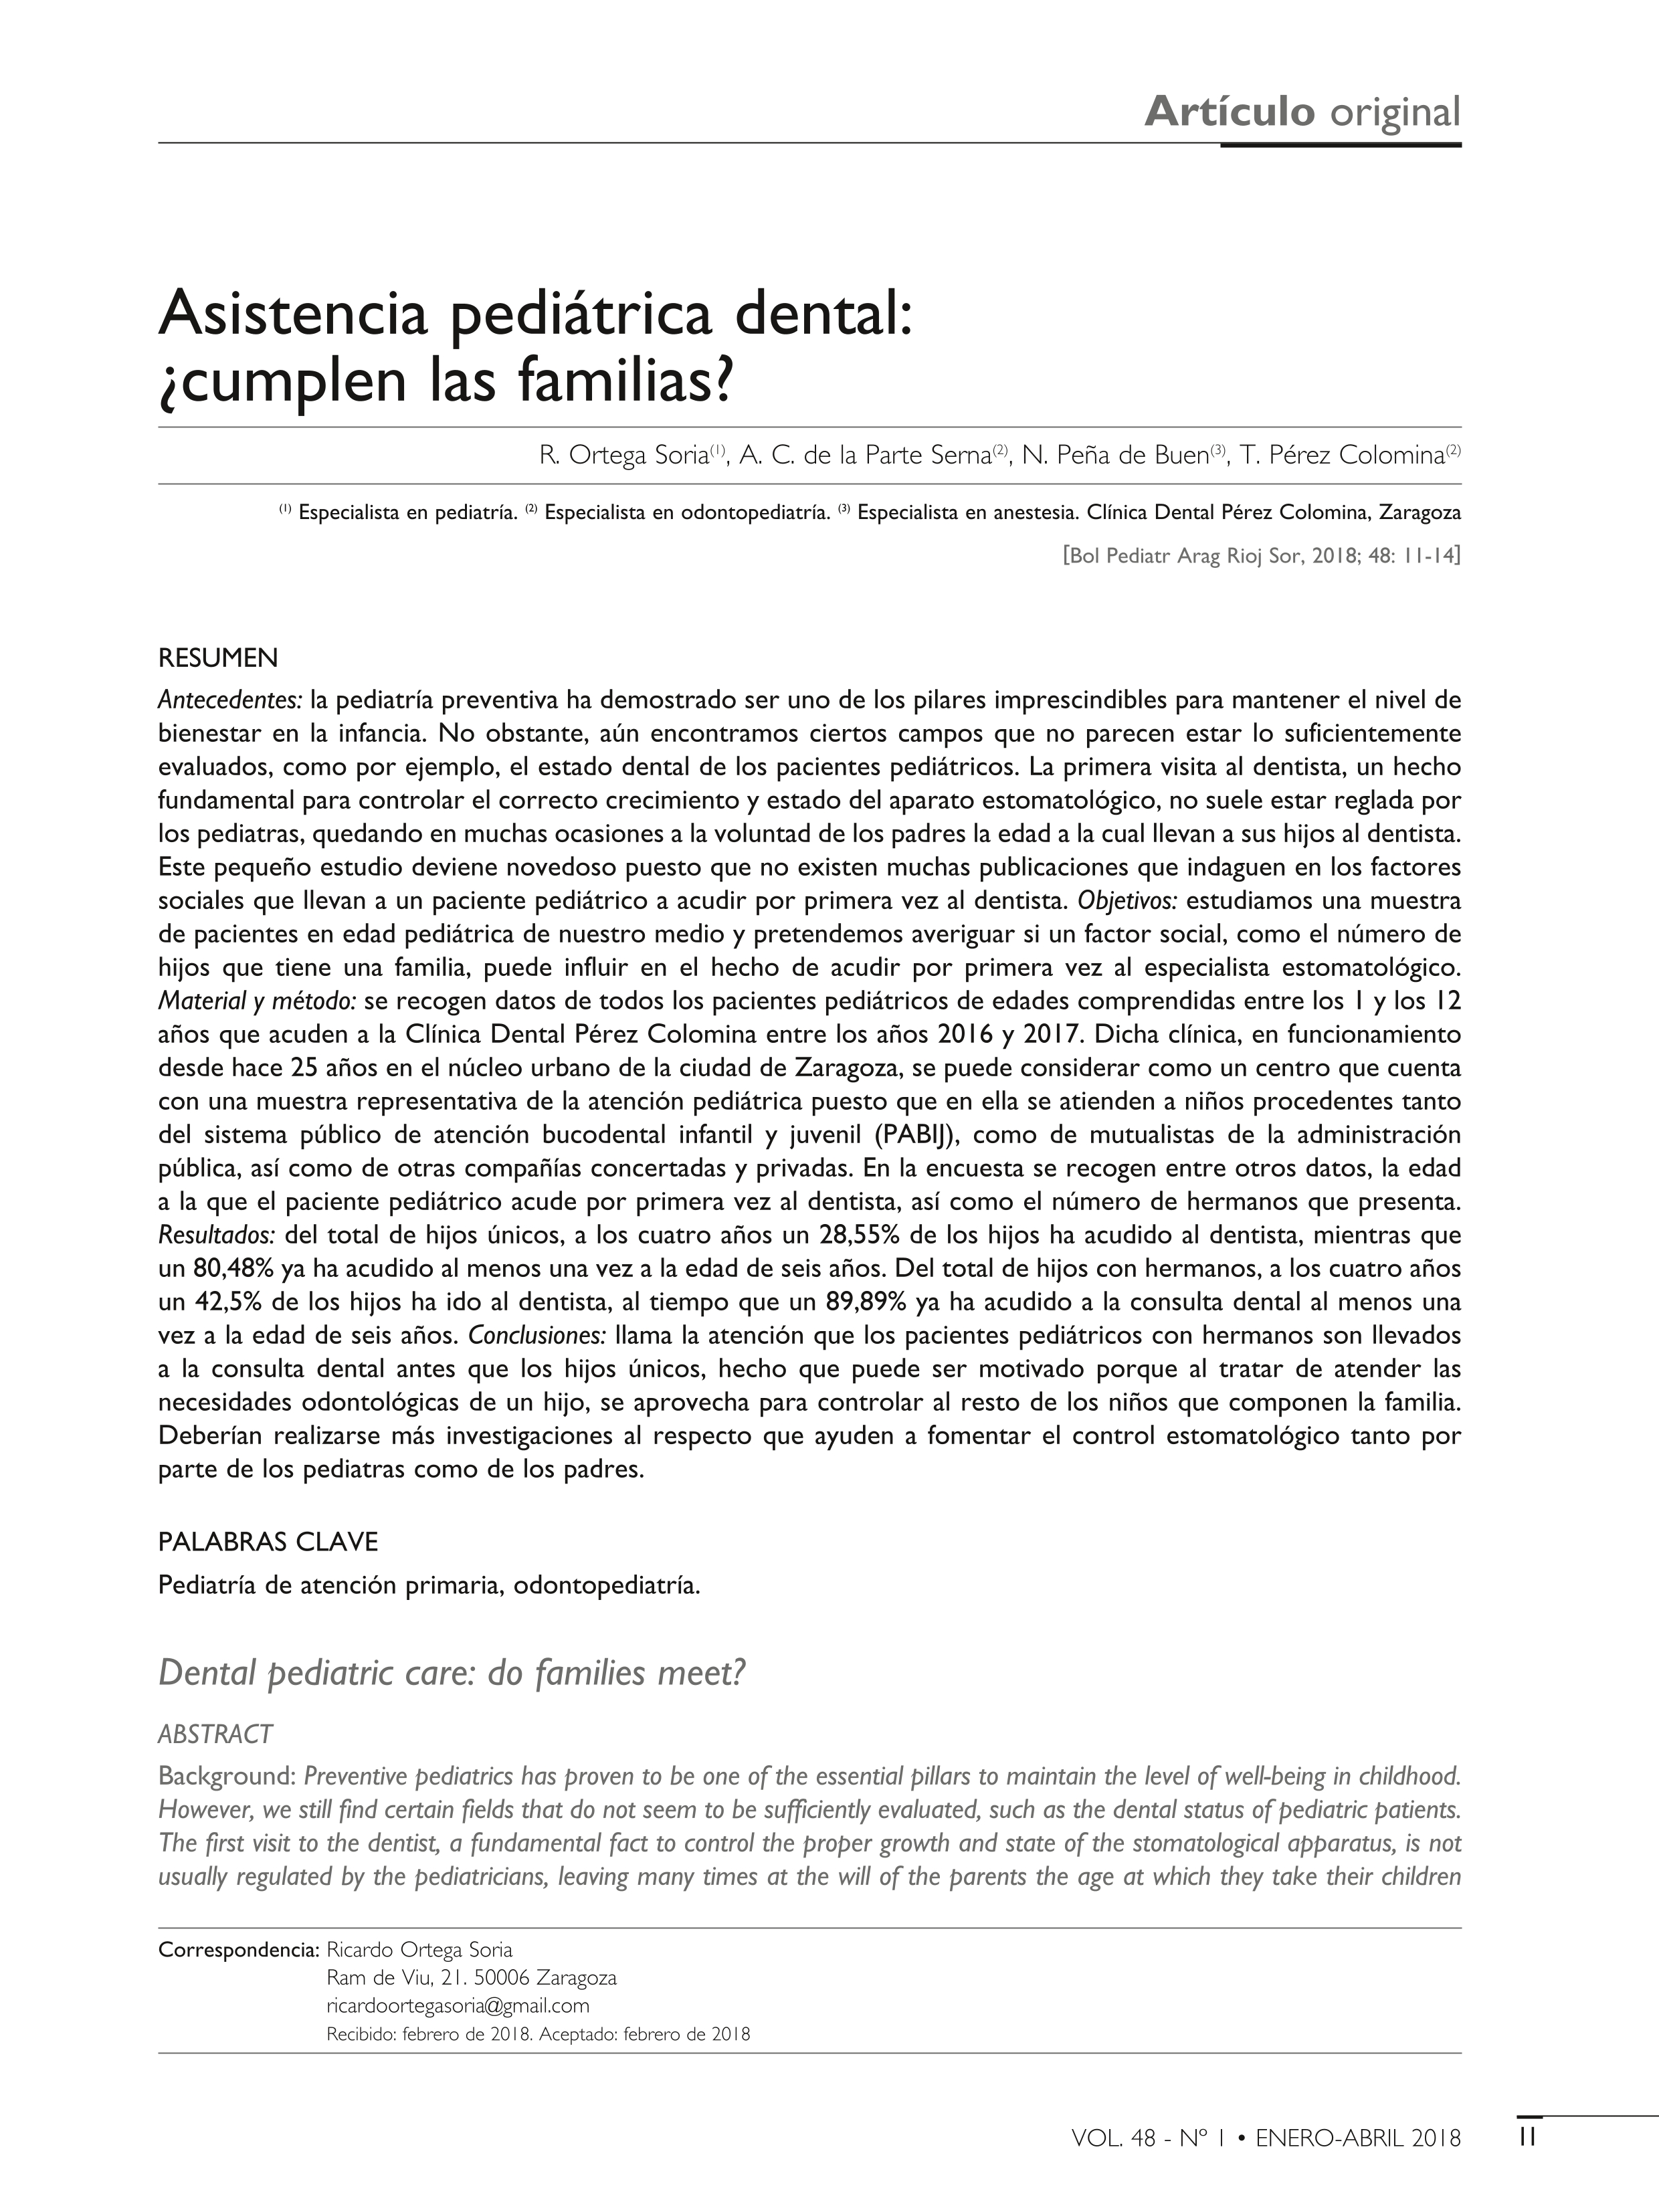 Asistencia pediátrica dental: ¿cumplen las familias?